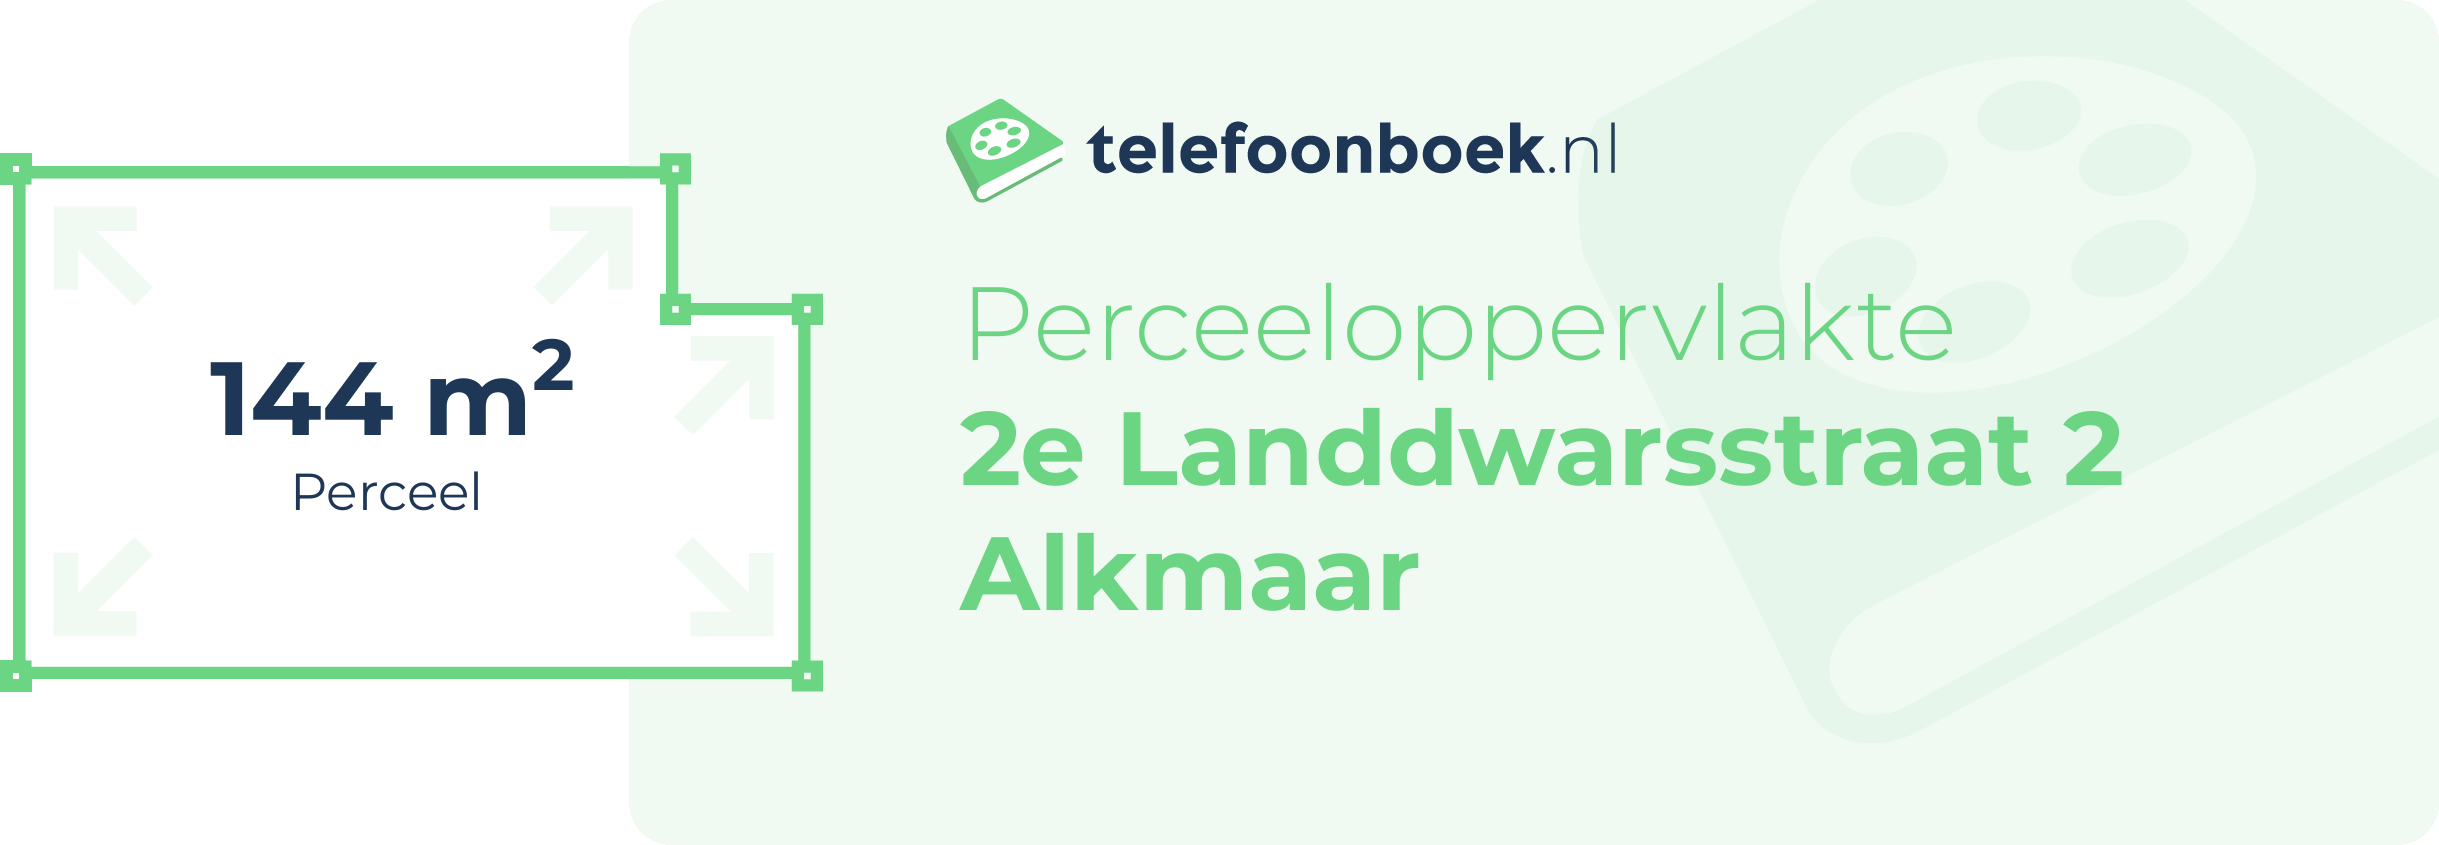 Perceeloppervlakte 2e Landdwarsstraat 2 Alkmaar